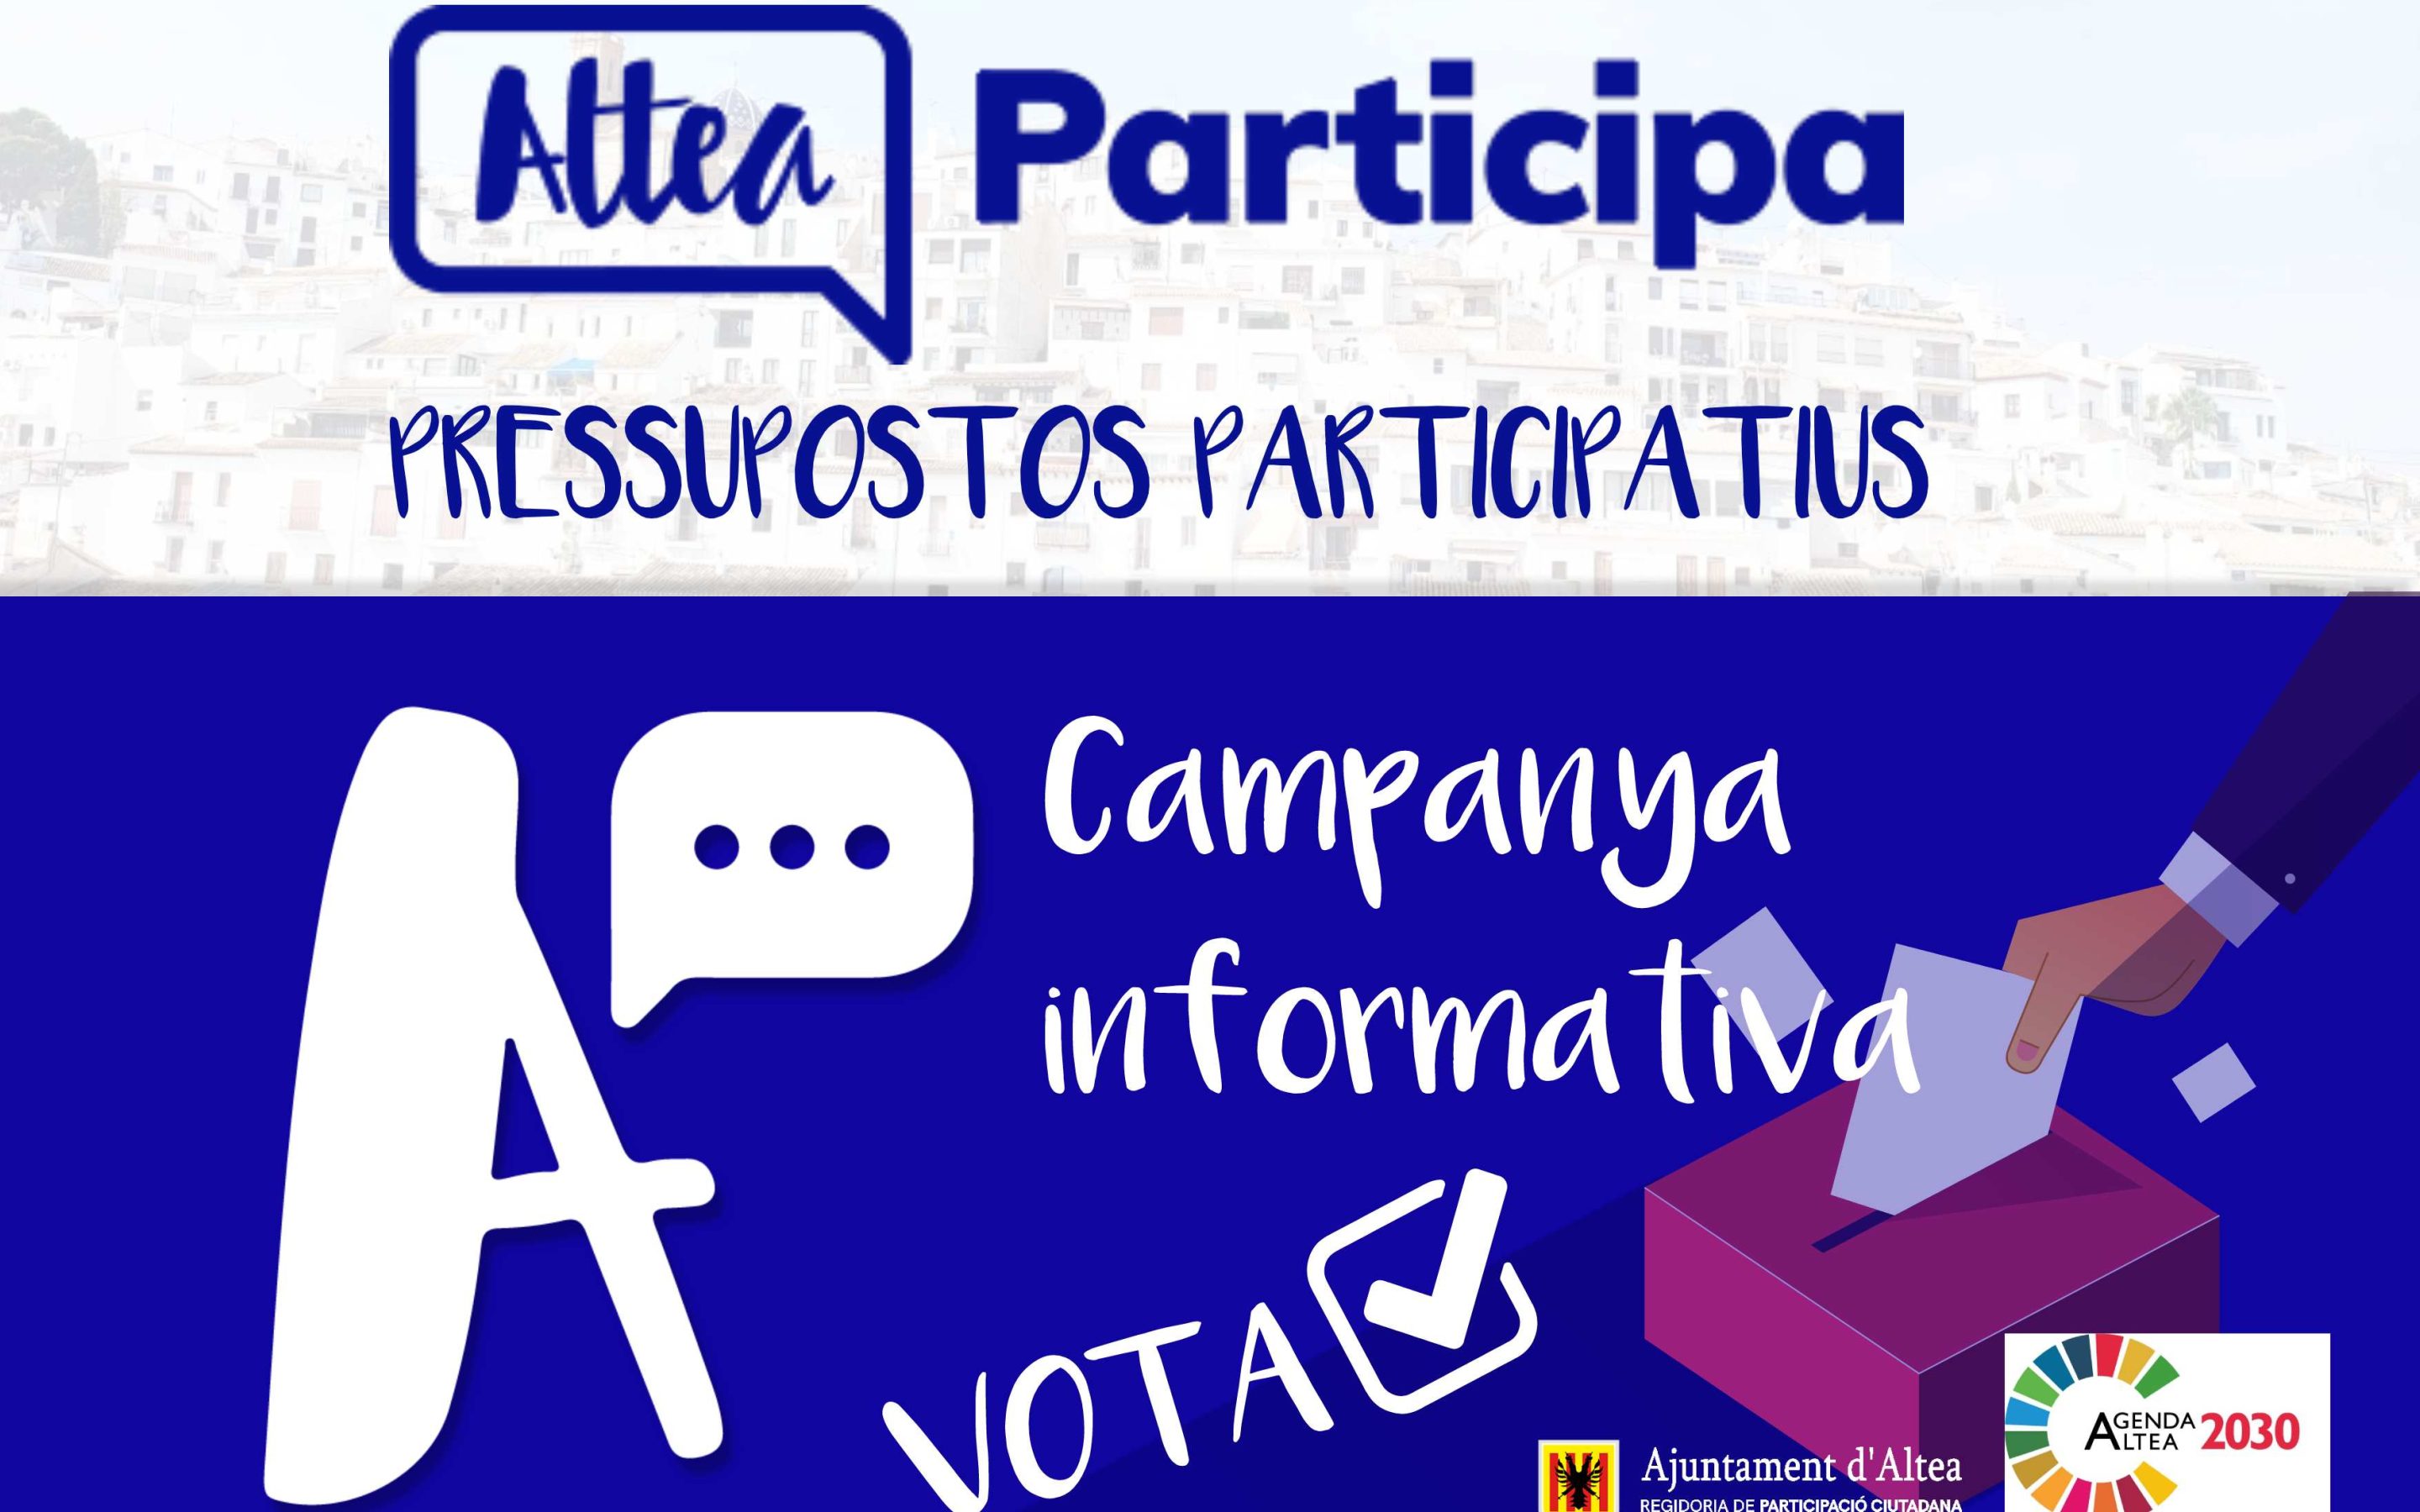 L’Ajuntament habilita punts d’informació i votació dels pressupostos participatius